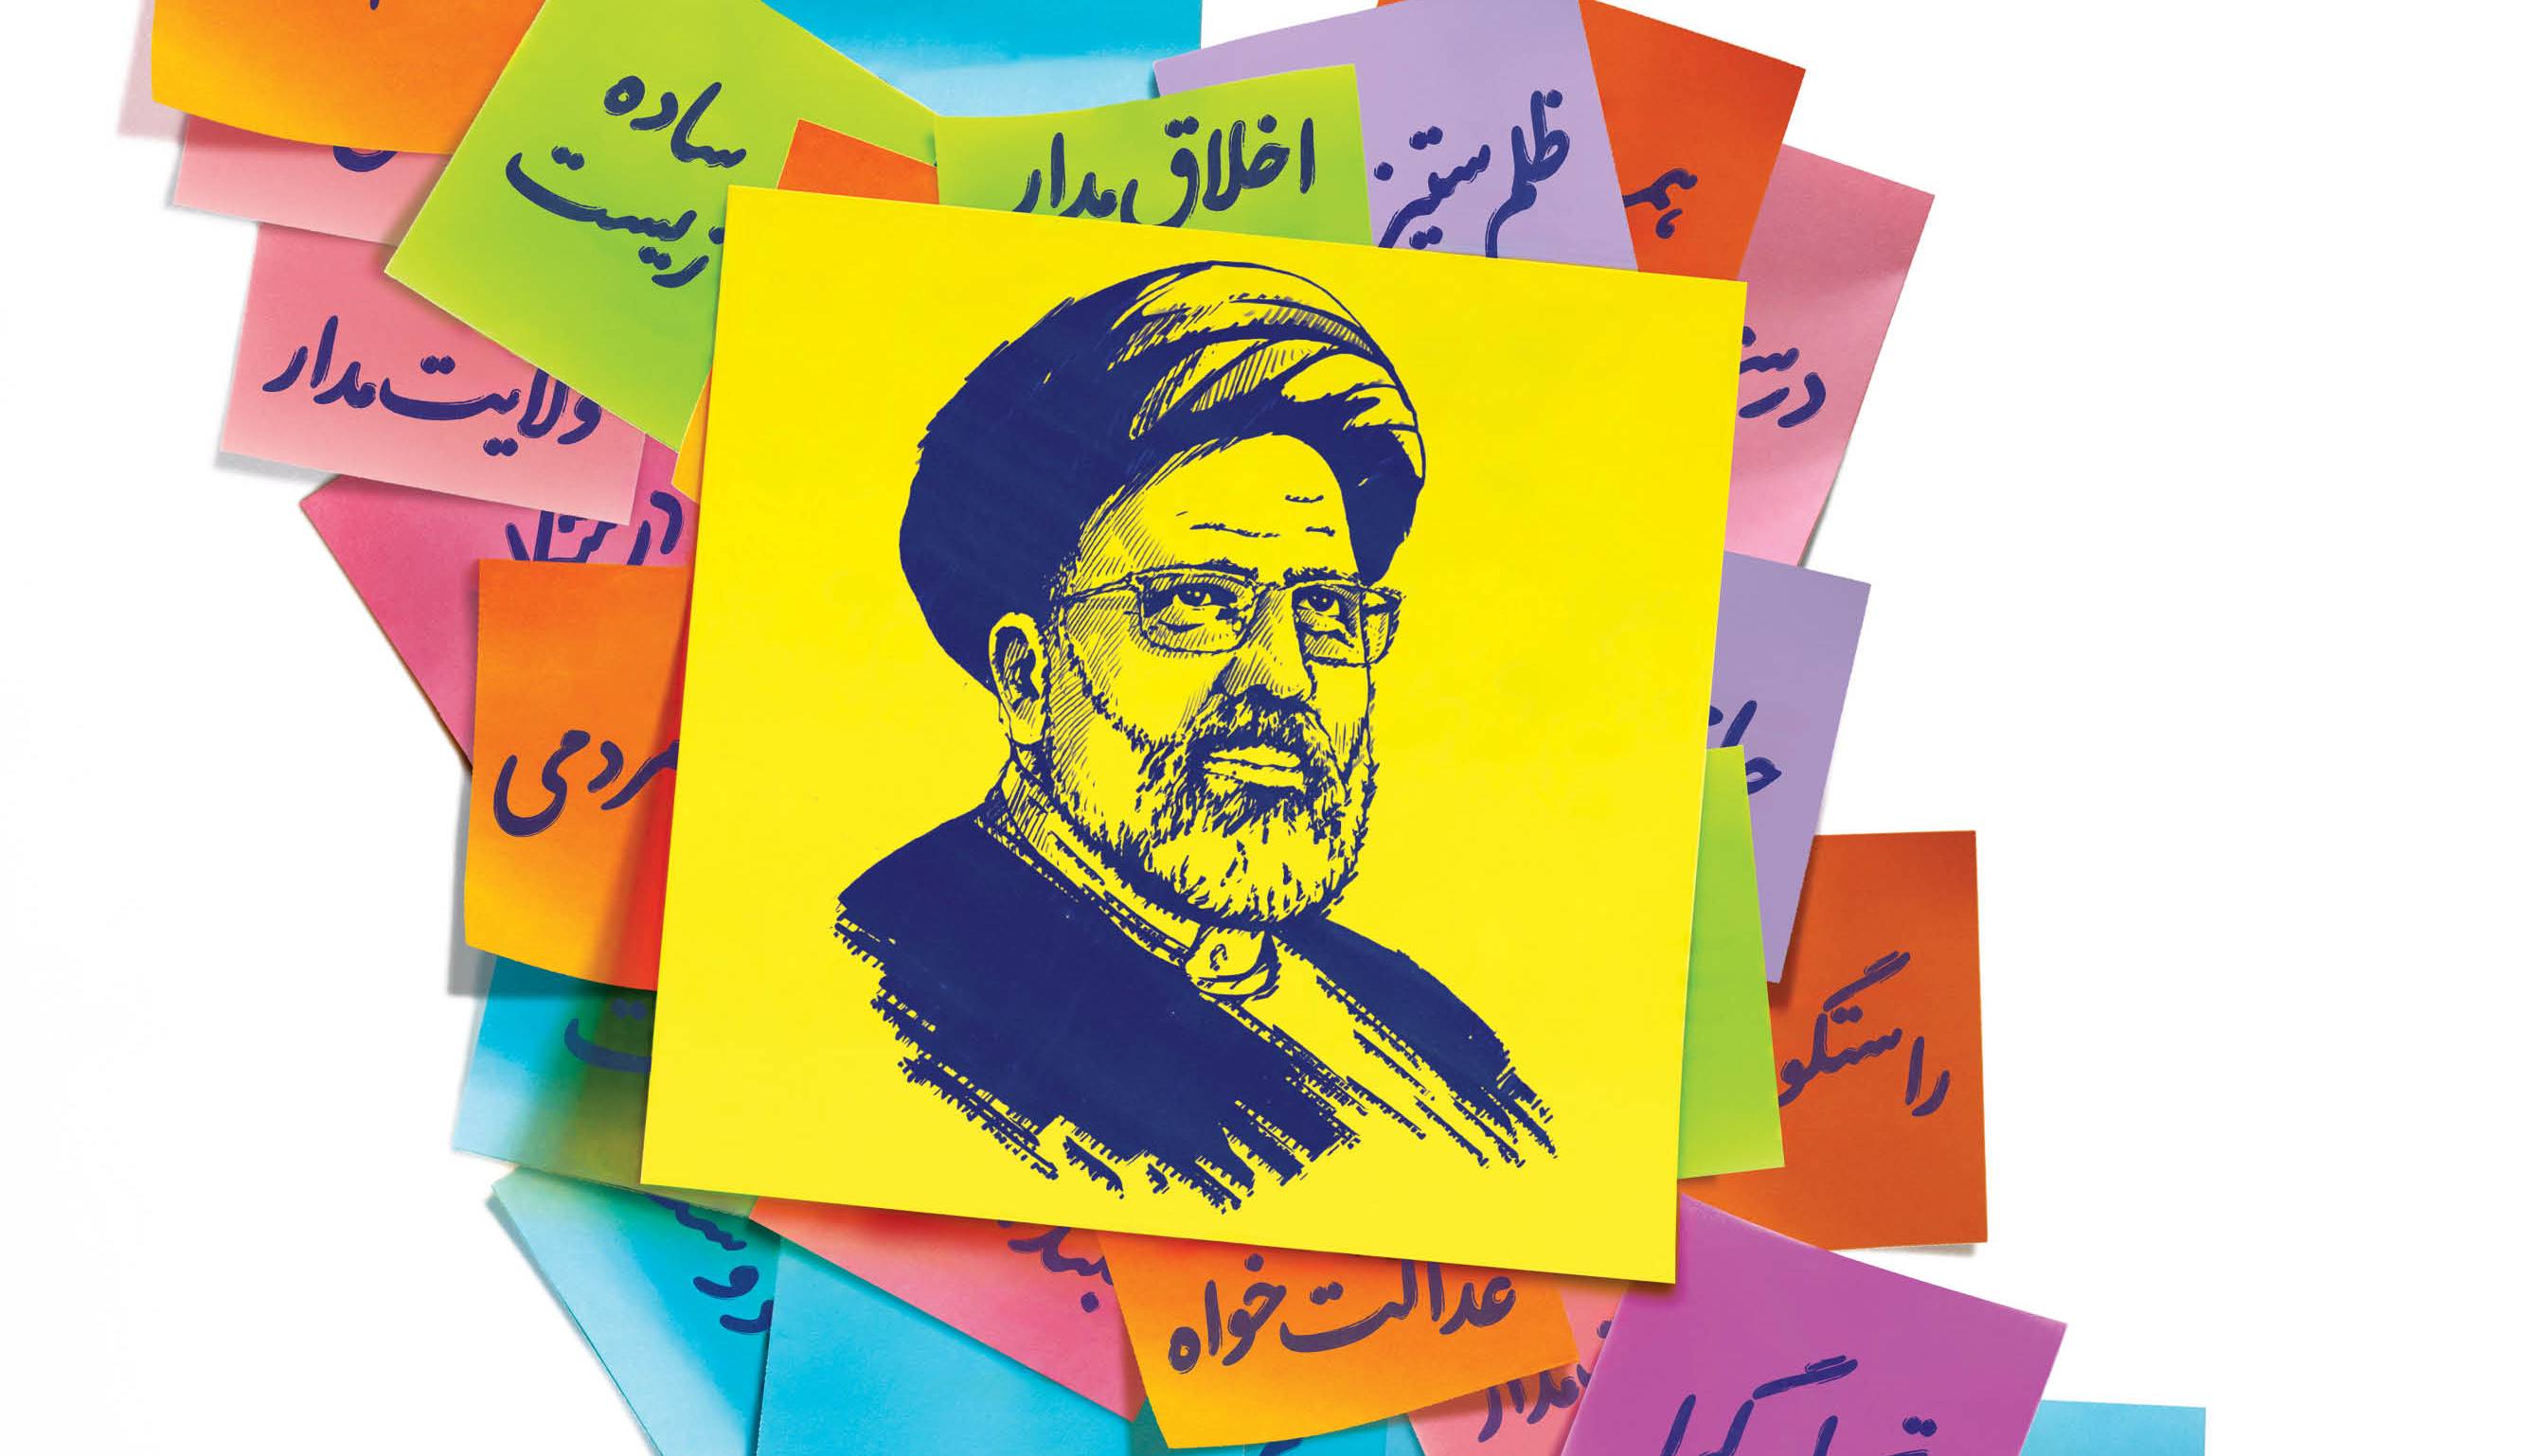 همشهری: کاندیدایی اصلح است که ویژگی های رئیسی را داشته باشد